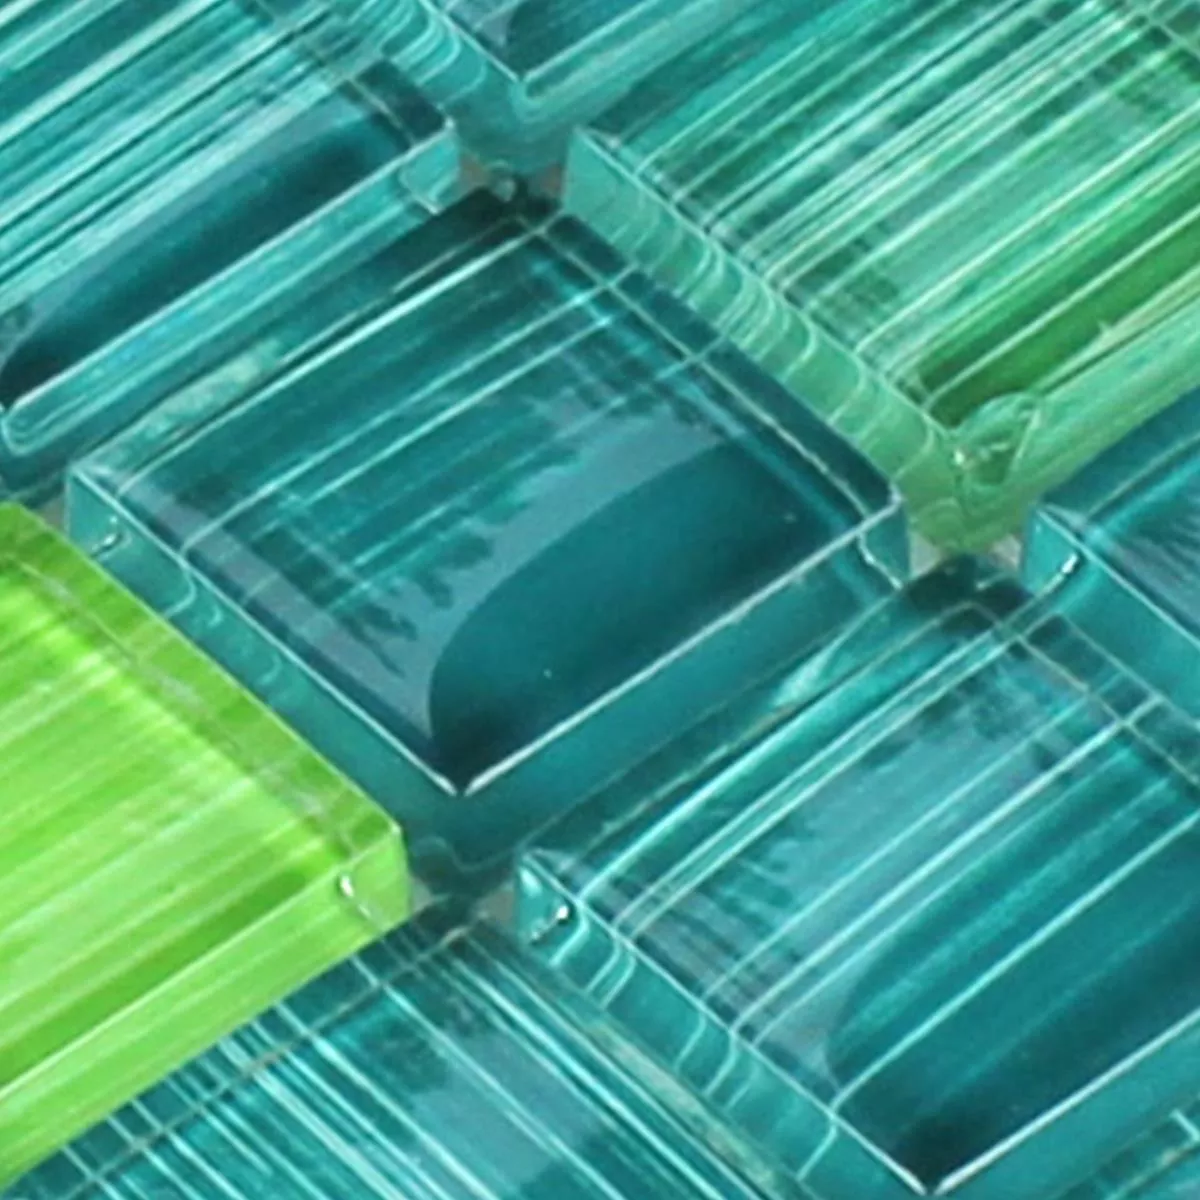 Padrão de Azulejo Mosaico Listrado Vidro Cristal Verde